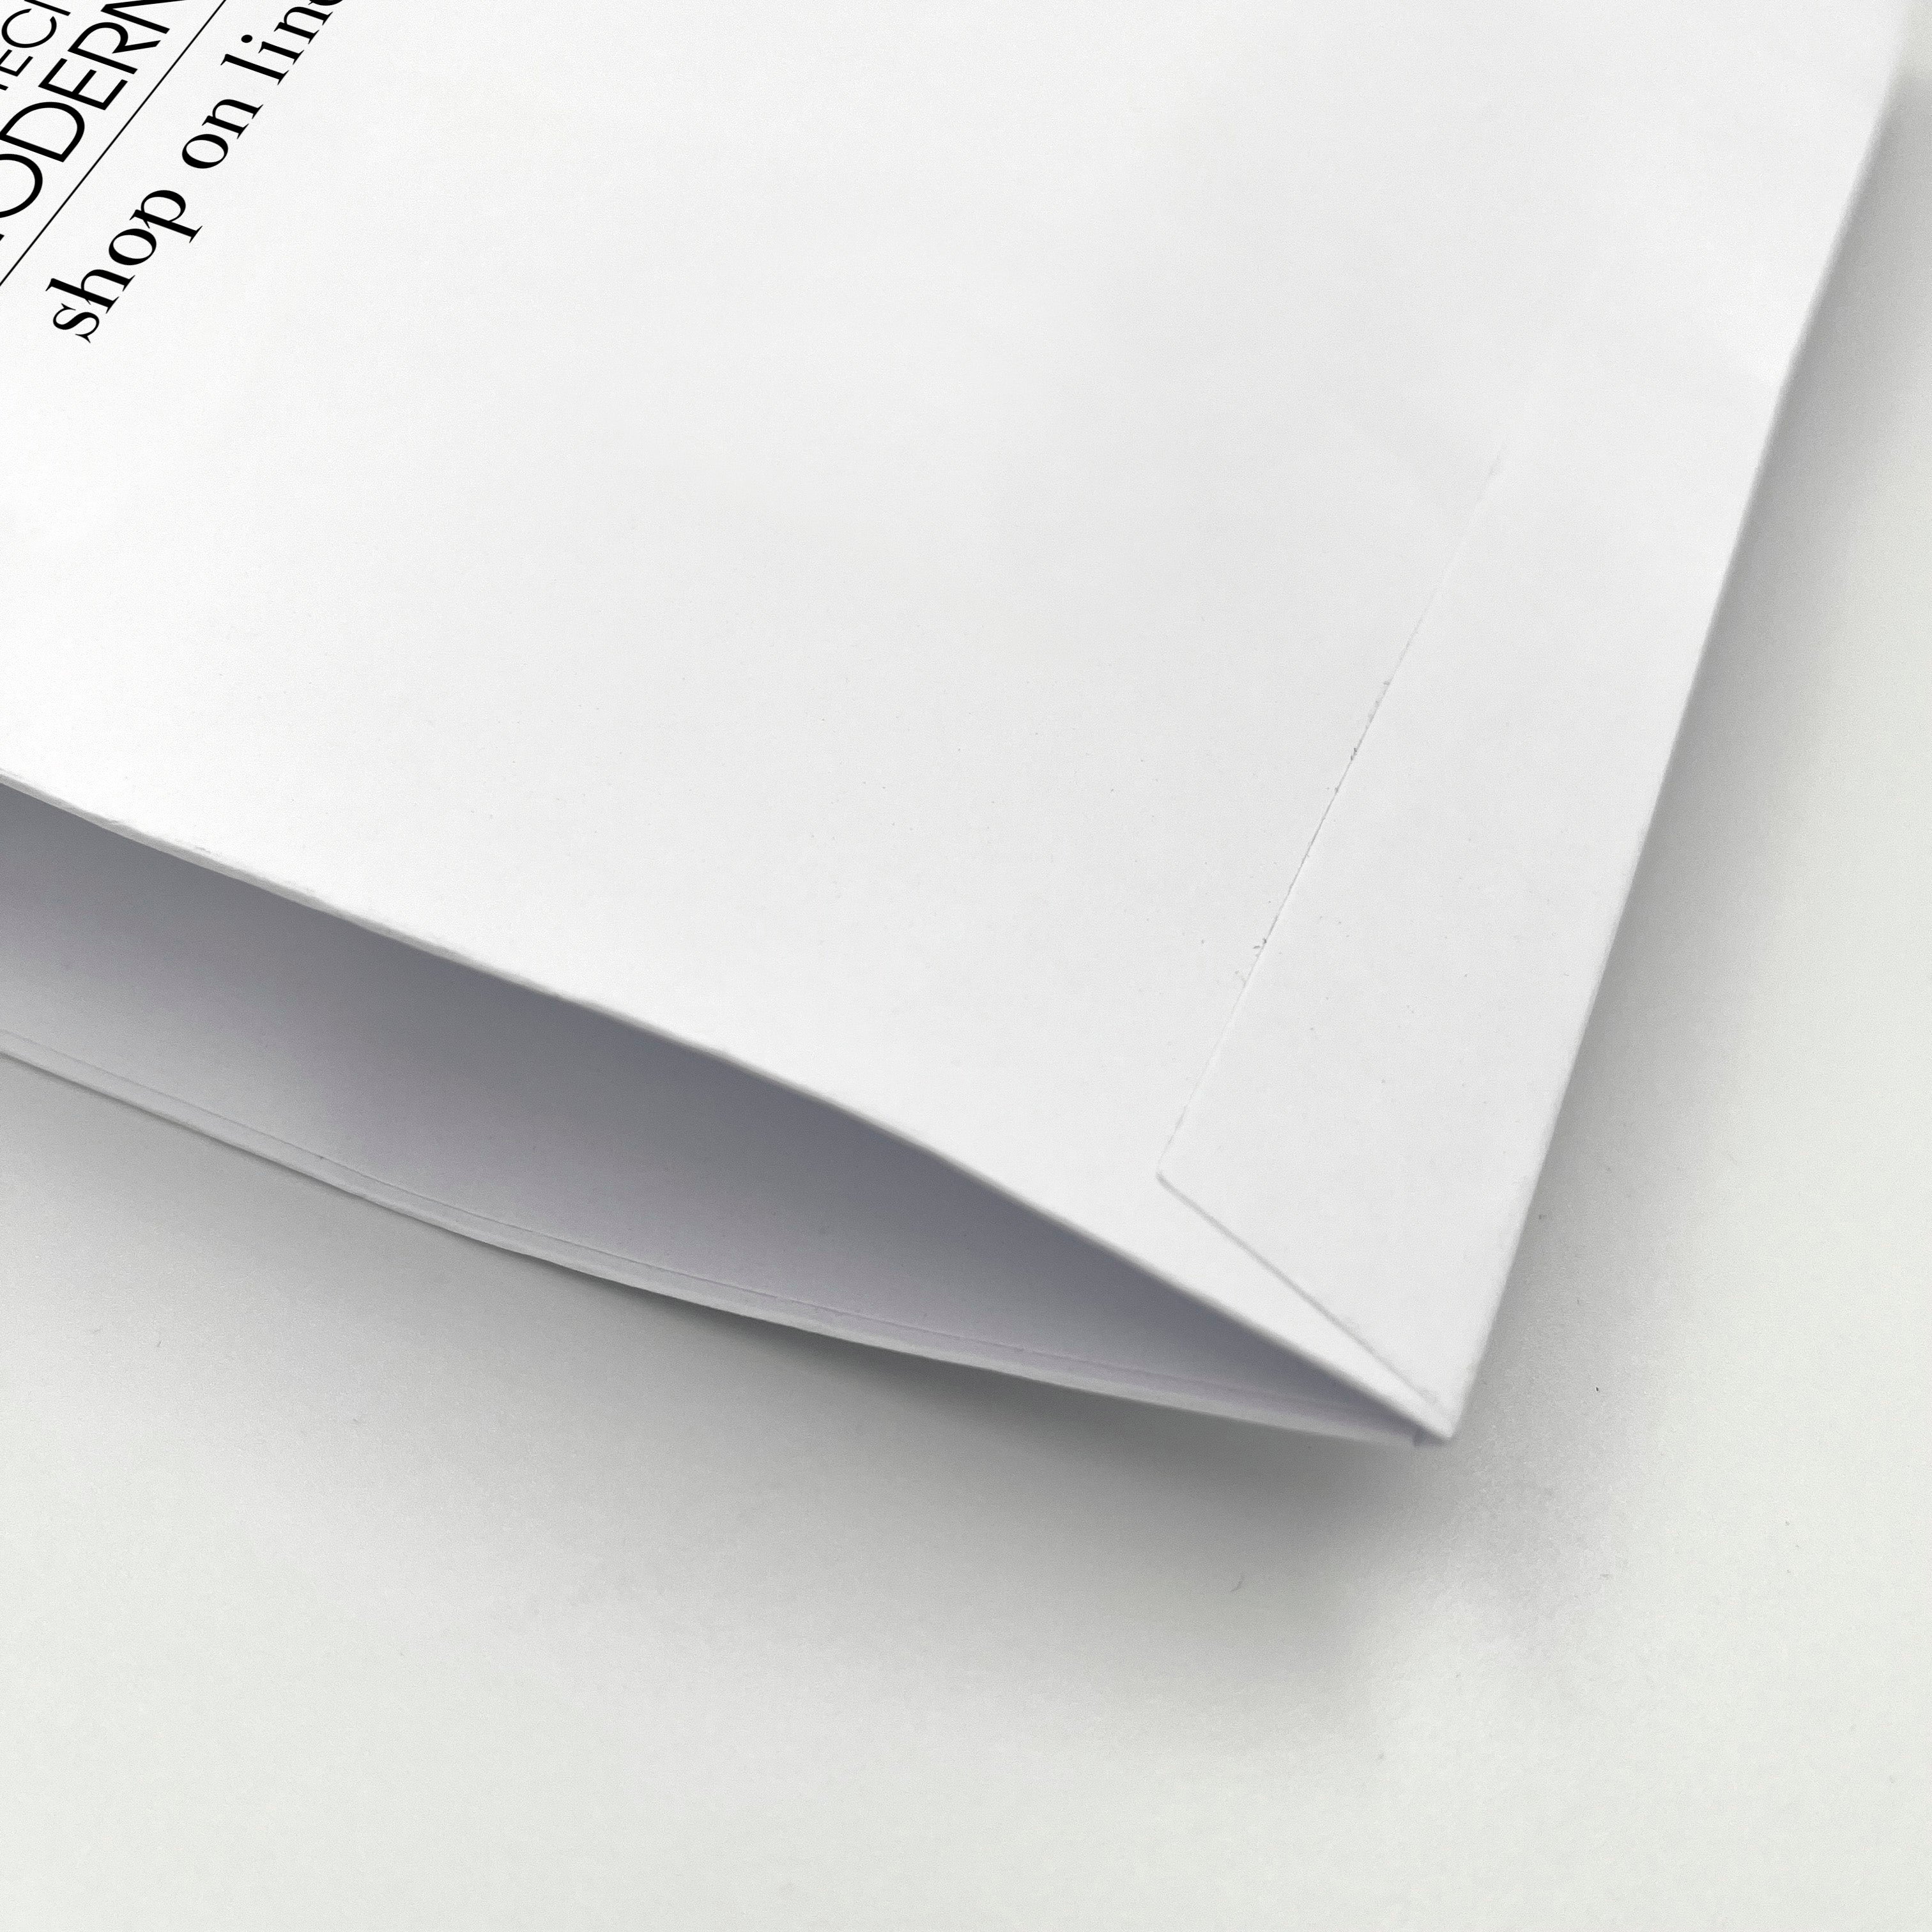 Pochette Mailer per spedizioni - stampa digitale all over sui due lati